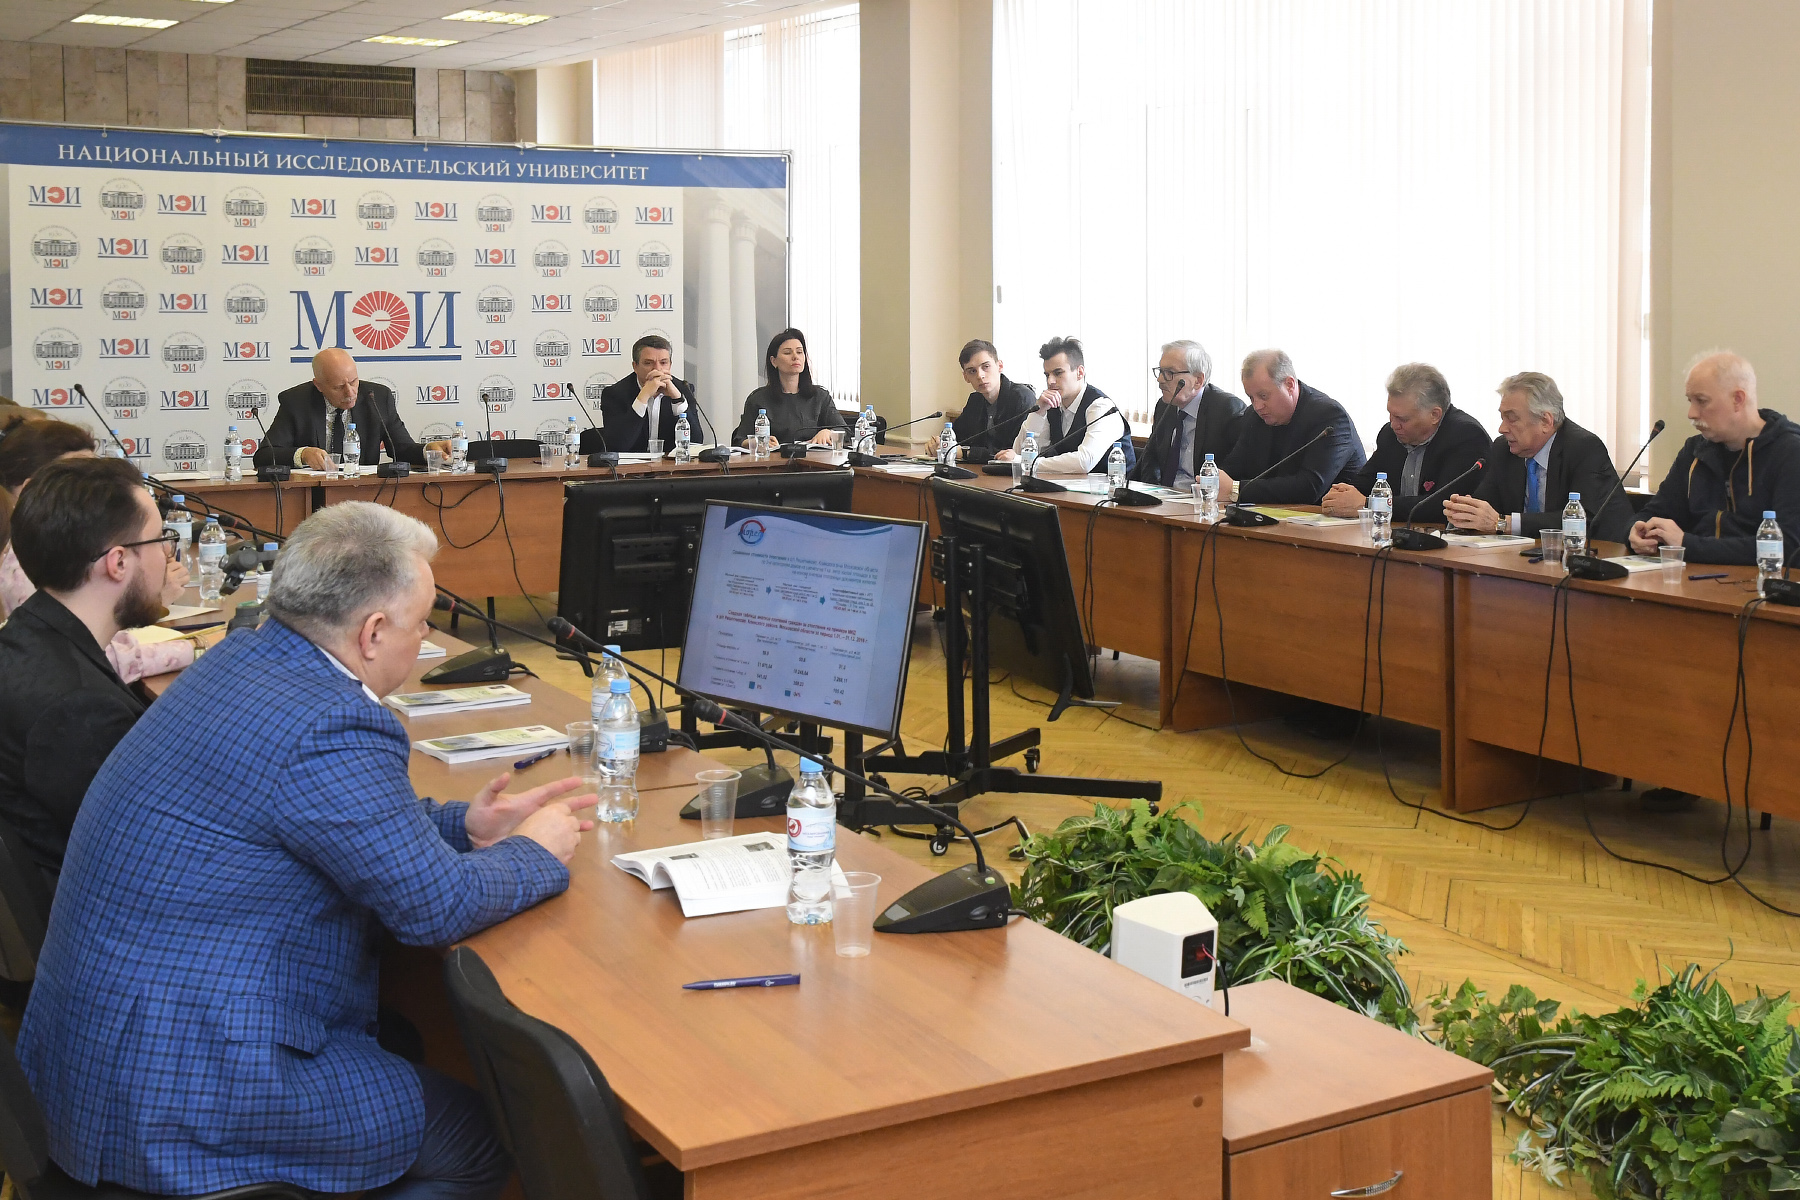 В Москве обсудили использование энергосберегающих технологий в городской инфраструктуре - фото 1